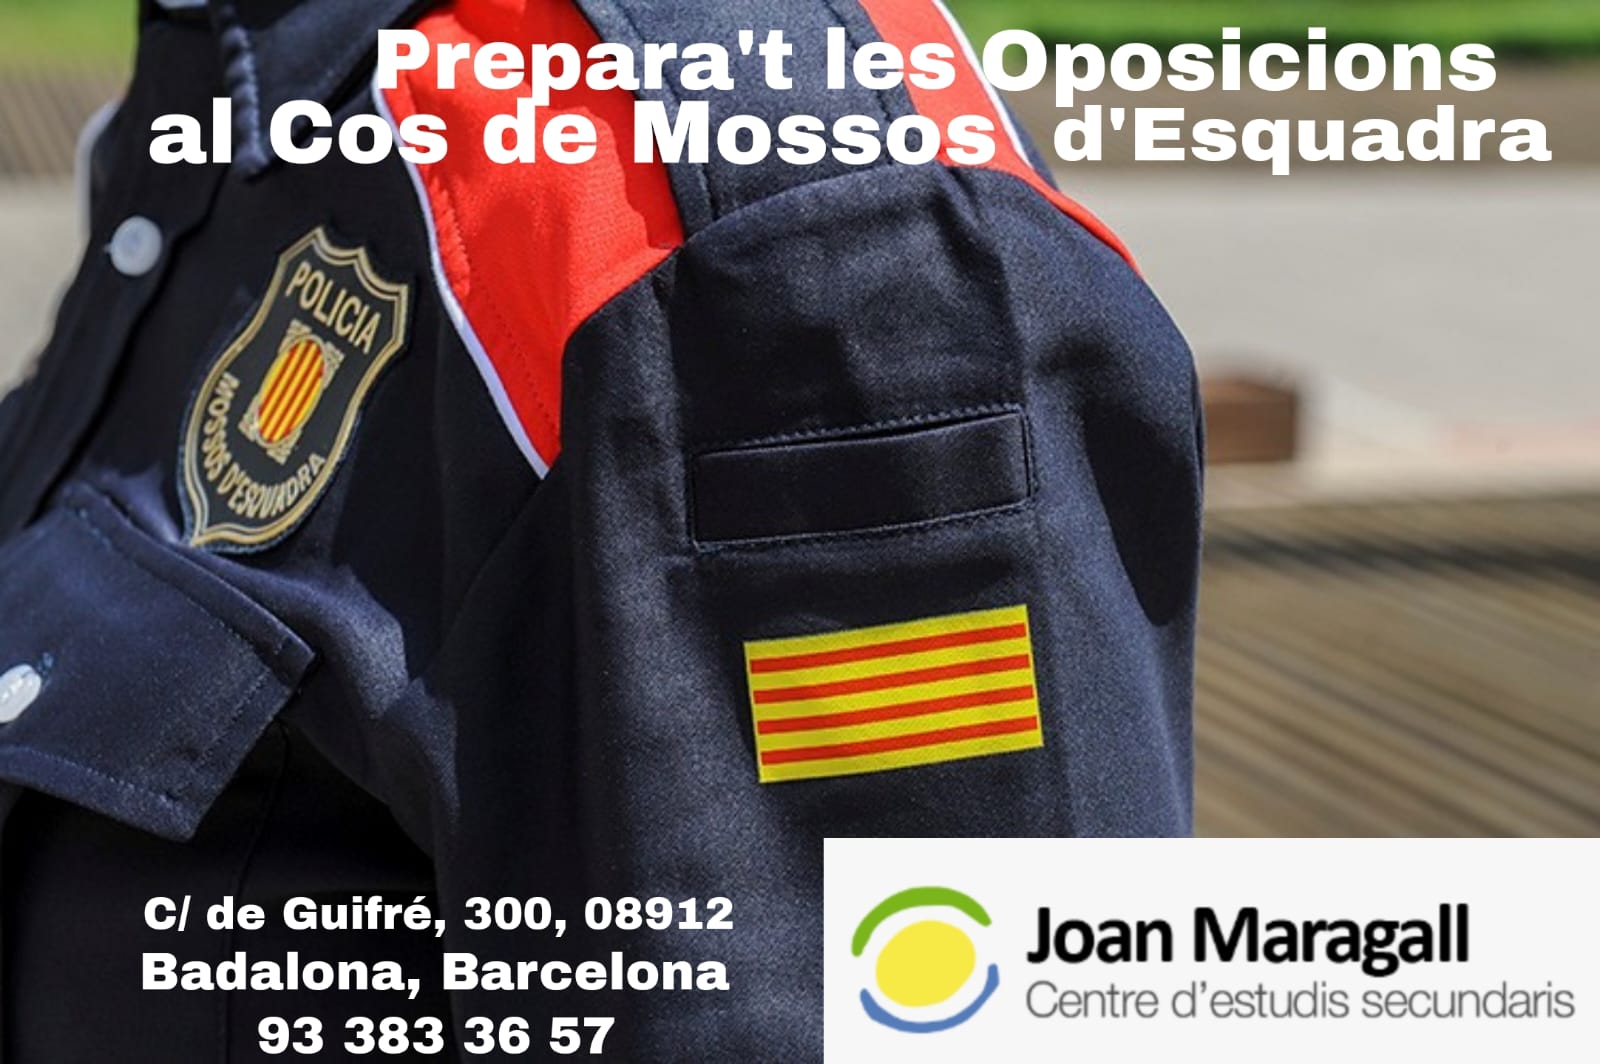 Oposicions mossos esquadra